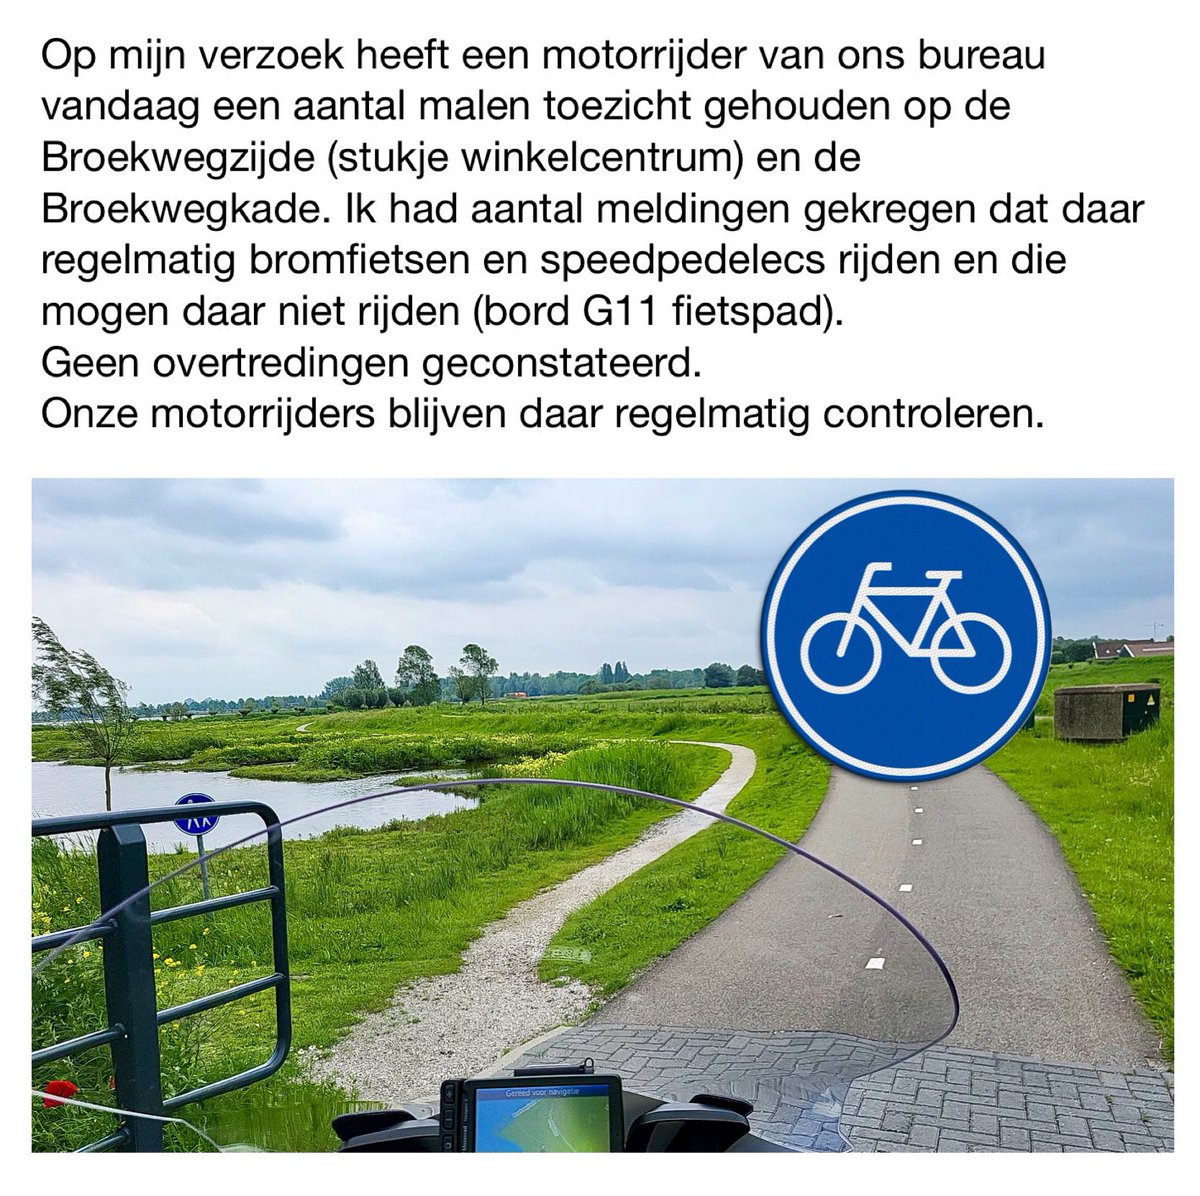 Toezicht op bromfietsen en speedpedelecs op het fietspad Broekwegzijde en Broekwegkade. 
#politie #zoetermeer #deleyens #broekwegzijde #broekwegkade